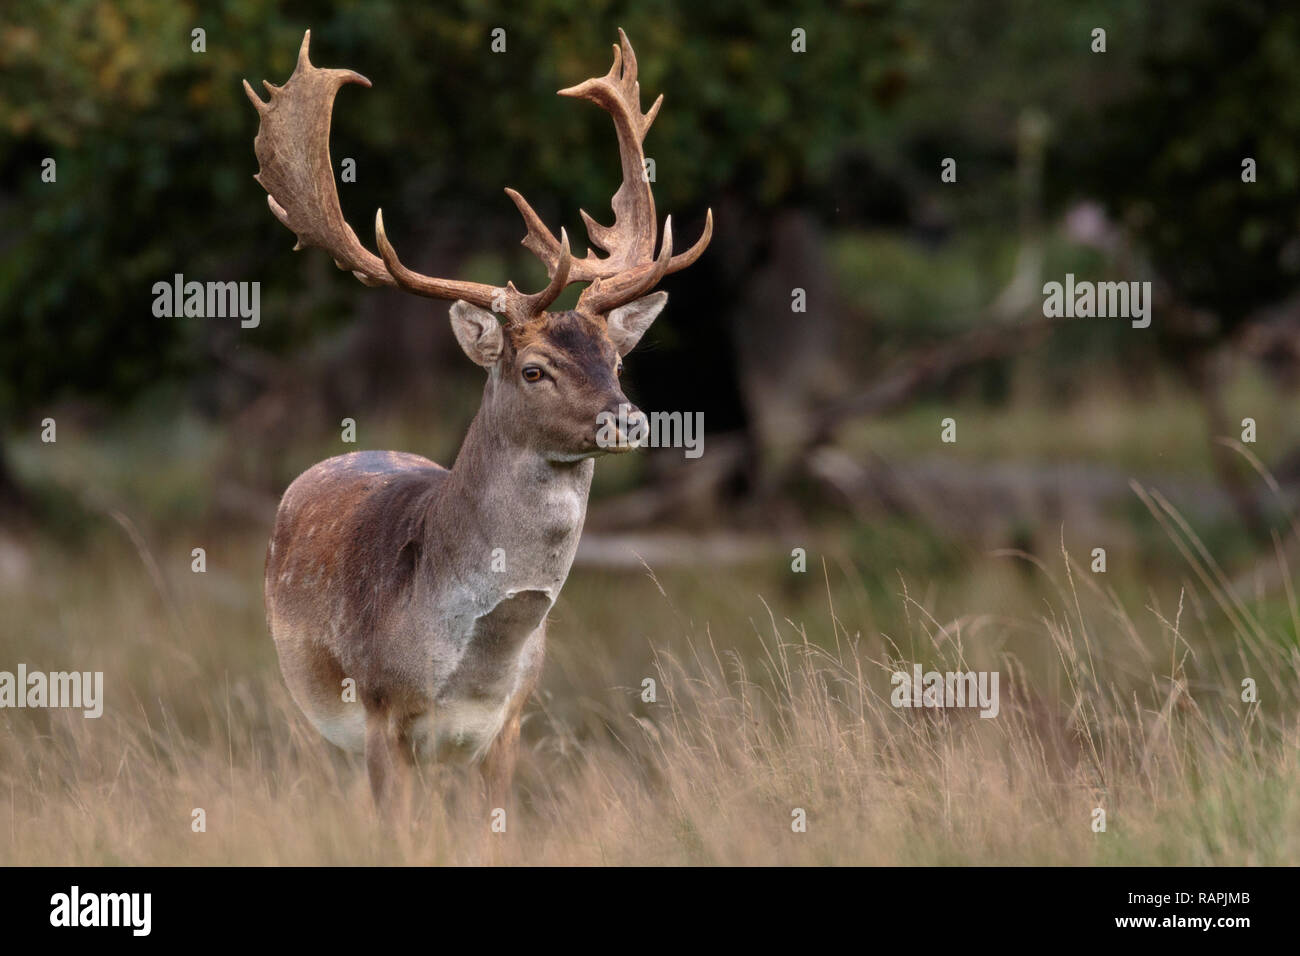 Fallow deer, buck, standing looking in to the camera, Jaegersbors dyrehaven, Denmark Stock Photo